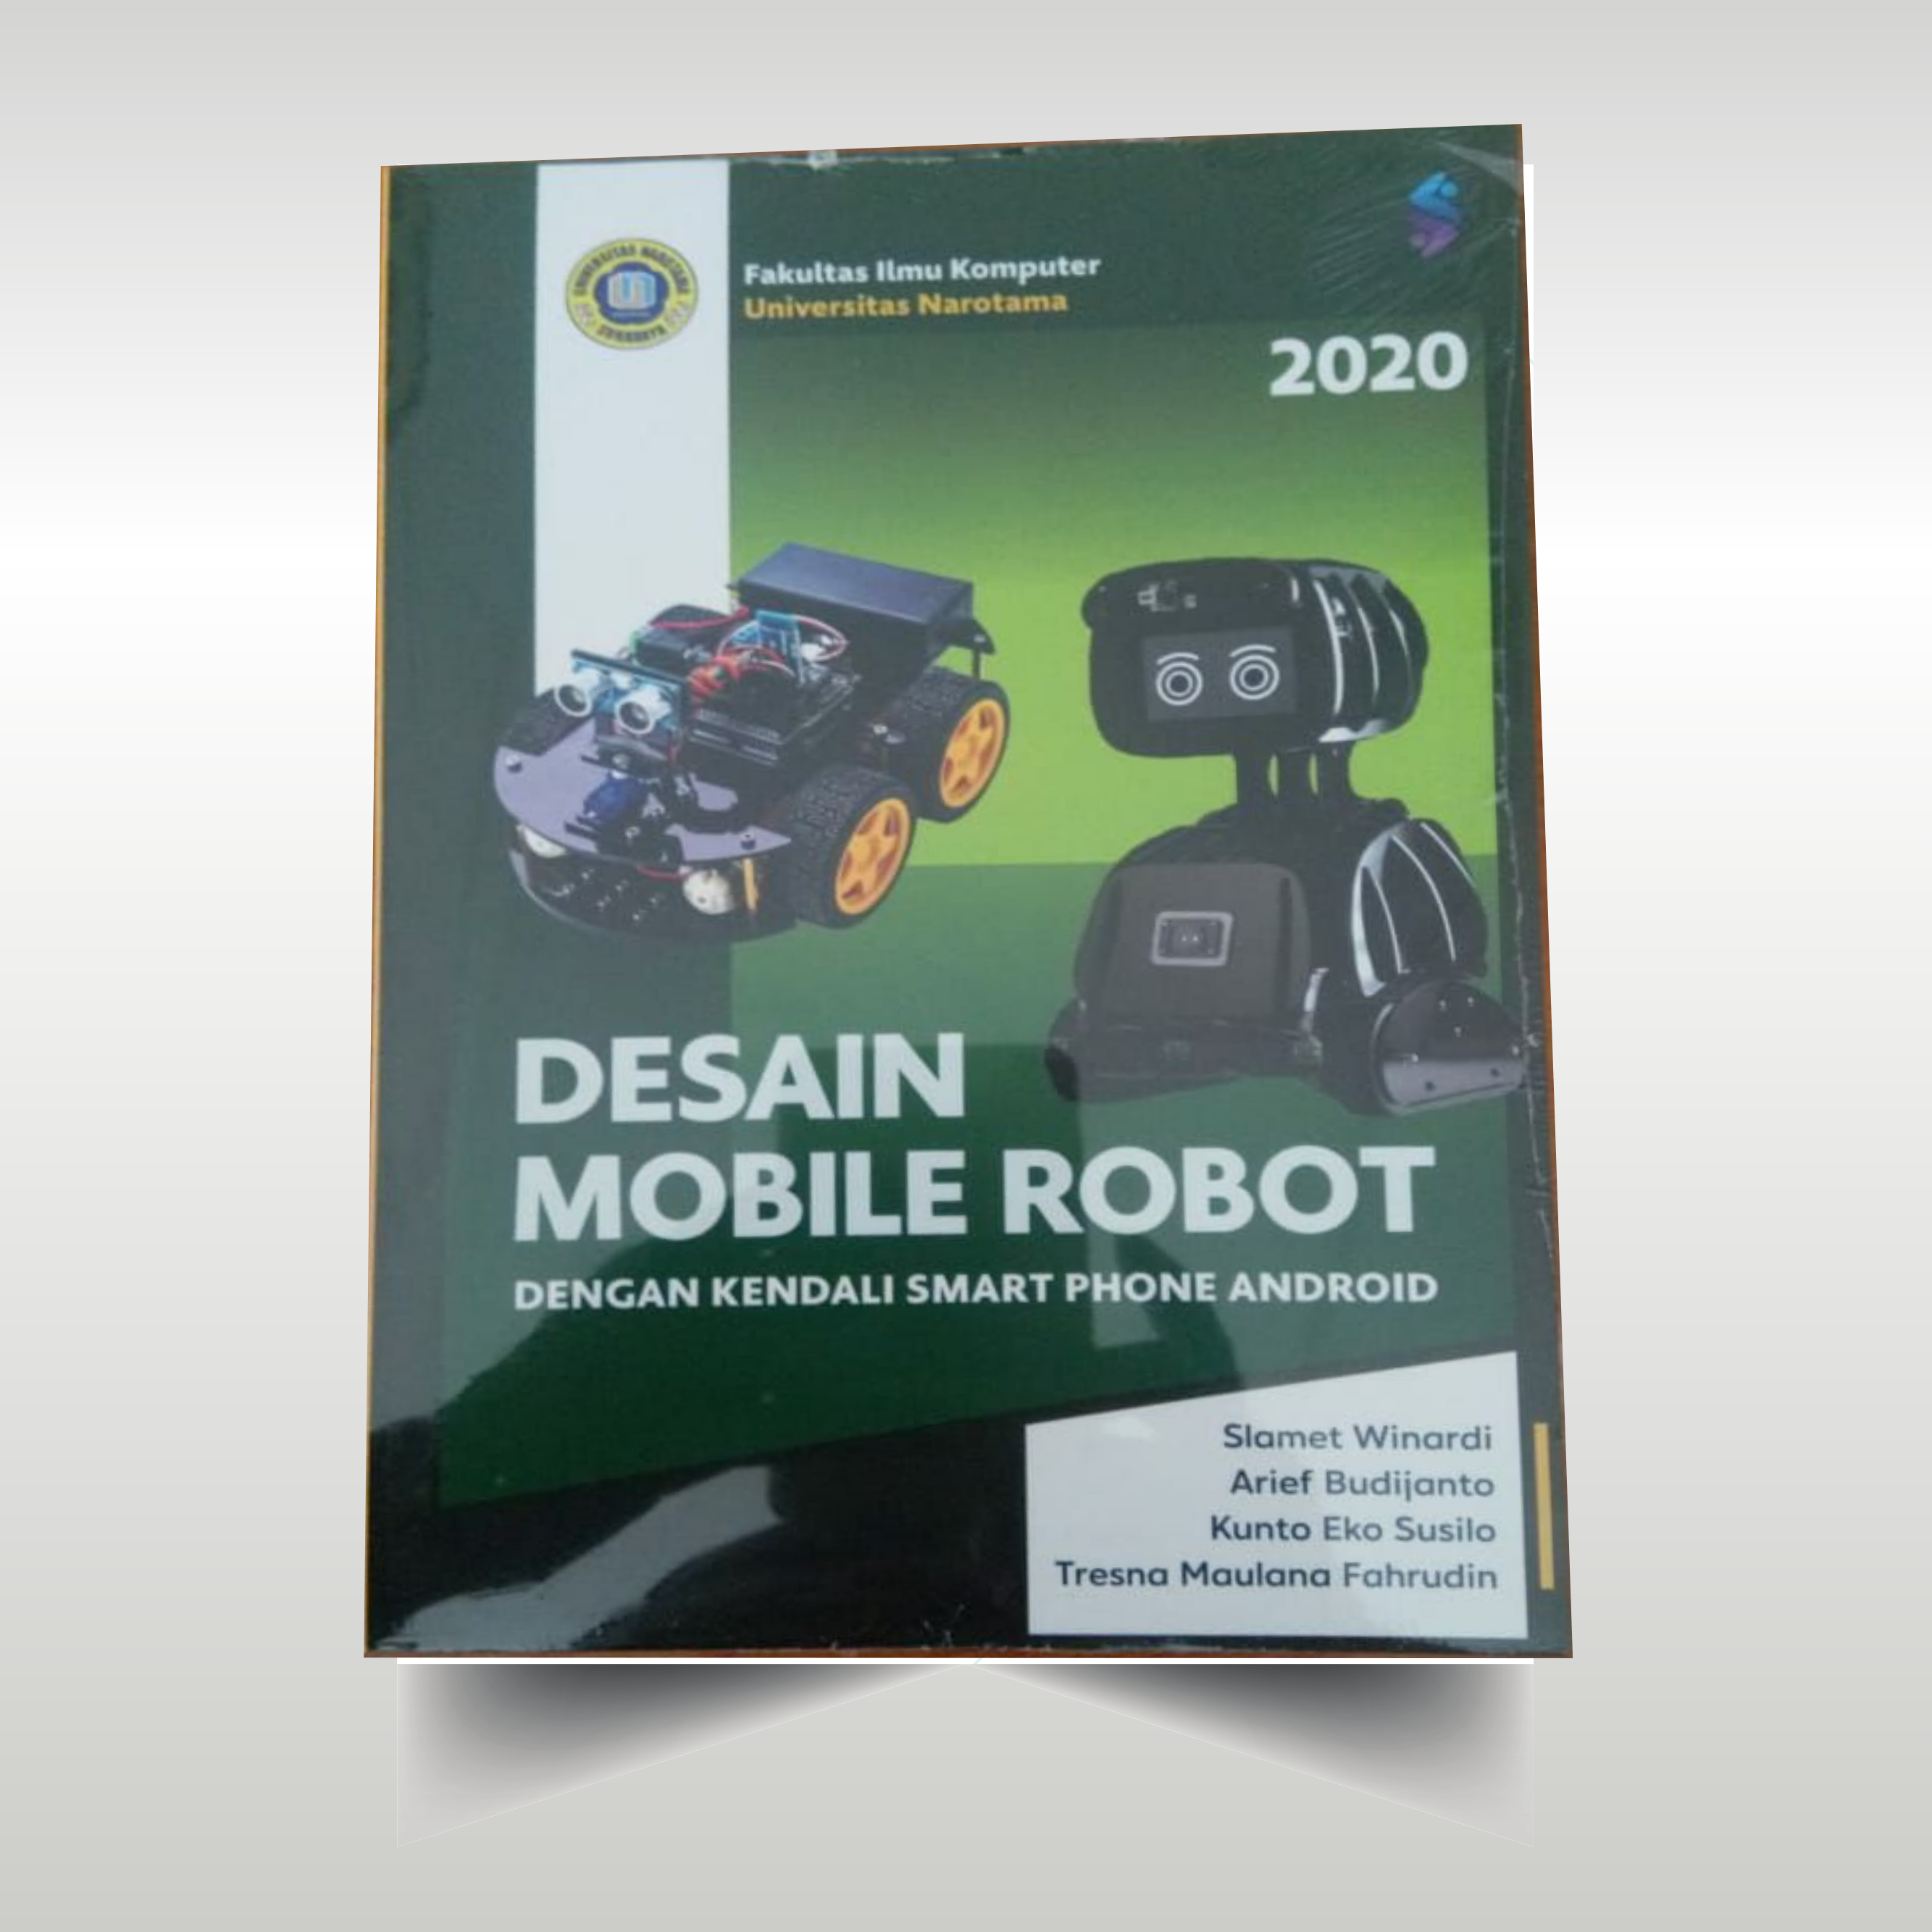 Team Dosen Sistem Komputer Berhasil Menerbitkan Buku Dengan Tema “Desain Mobile Robot”